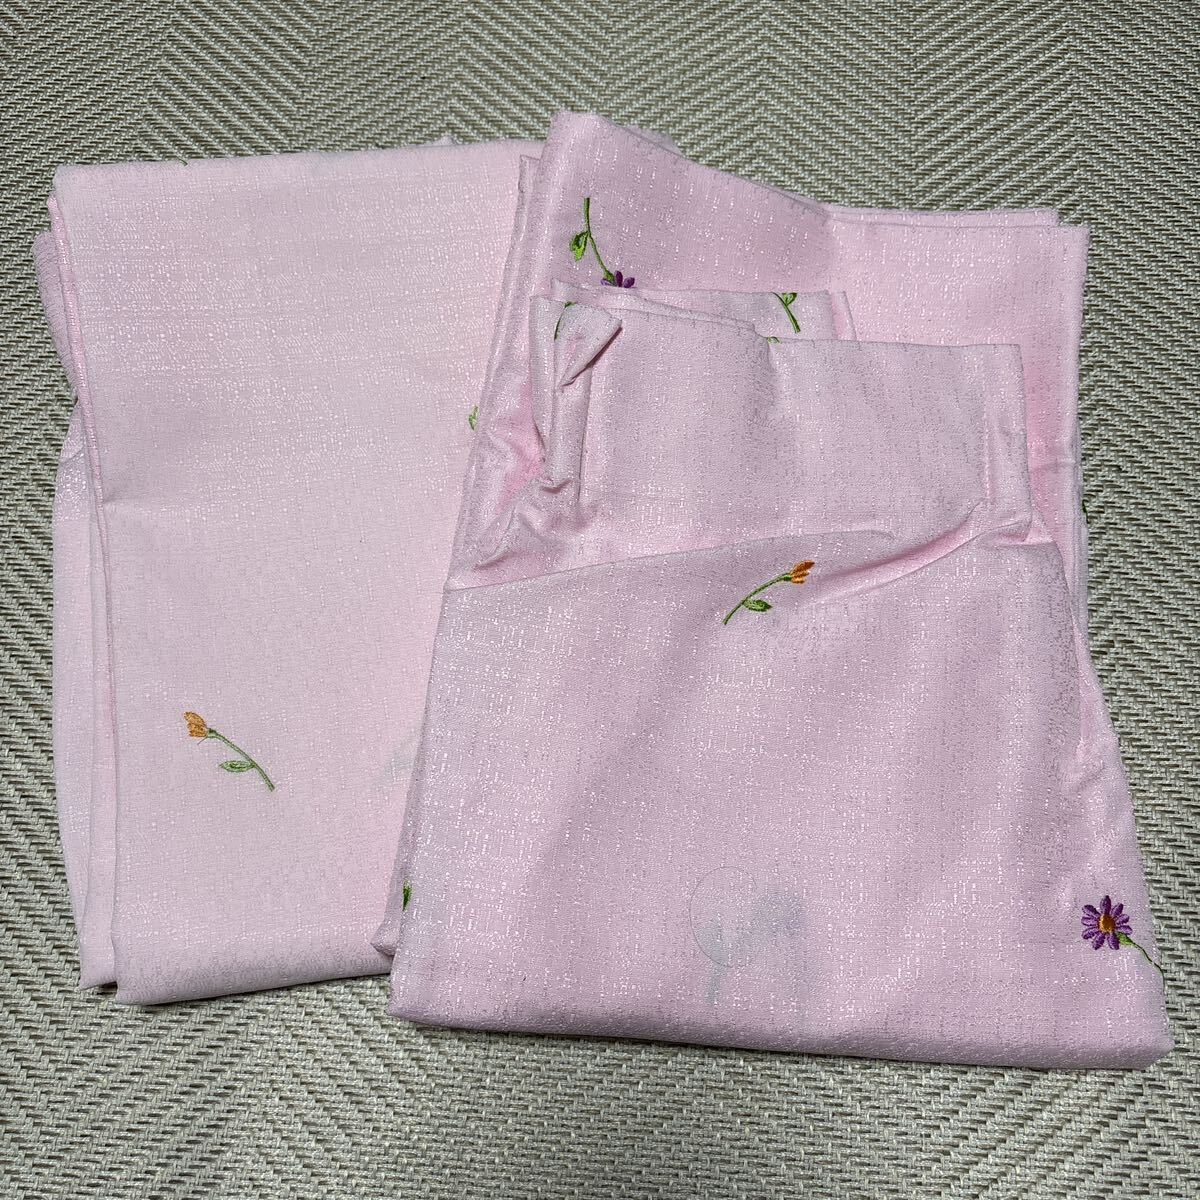 新品、未使用)小花柄刺繍が可愛い明るいピンク色のカーテン2枚セット(幅108cm、丈139cm)_画像1